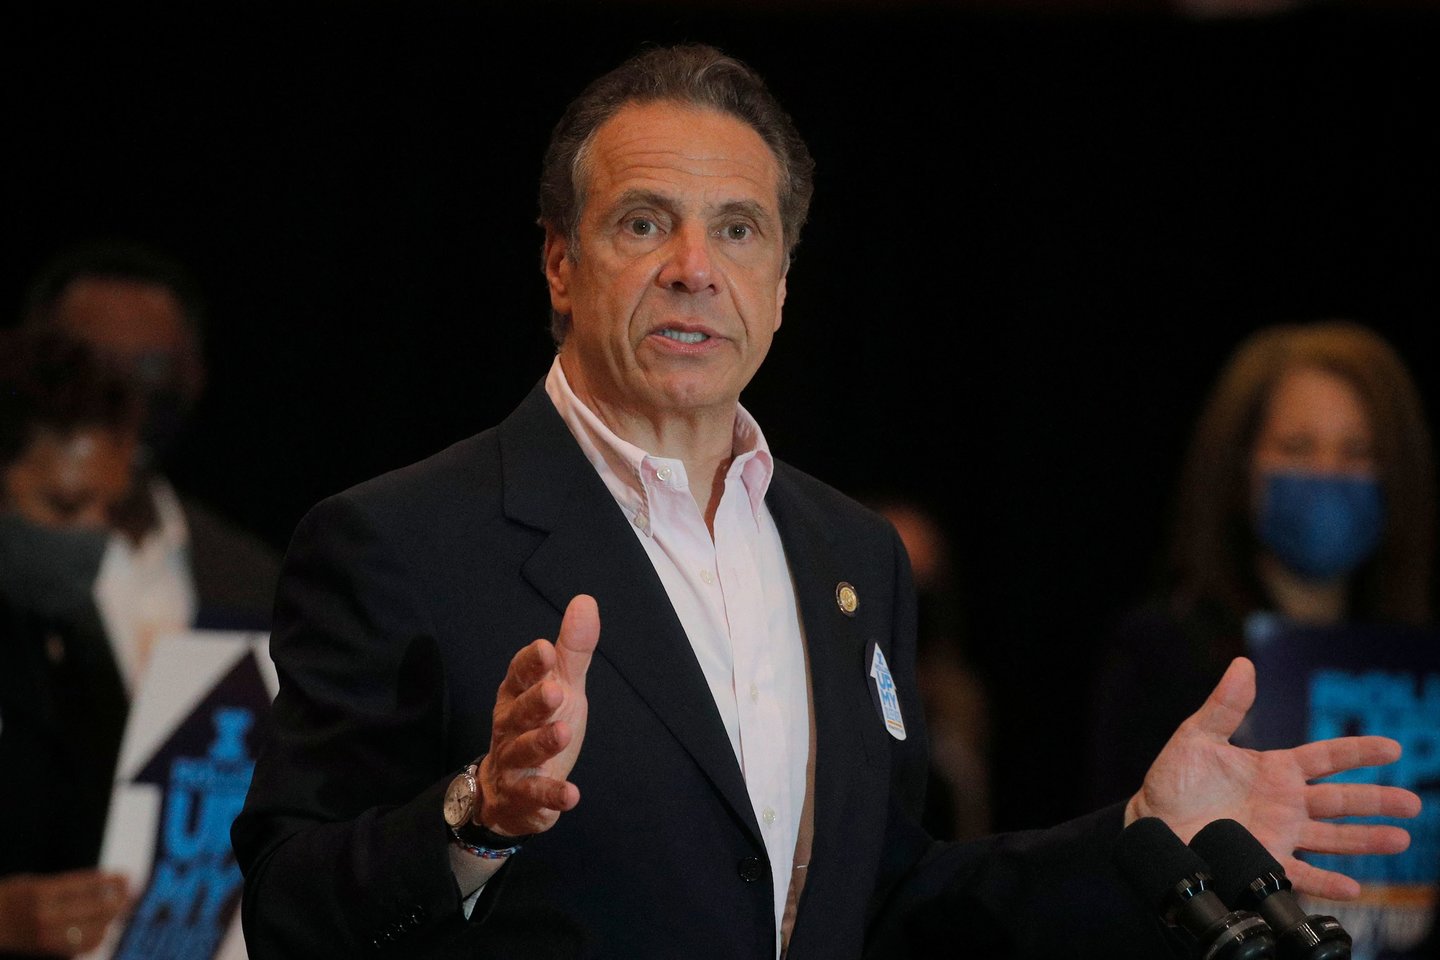 Buvęs Niujorko gubernatorius A. Cuomo apkaltintas seksualiniu nusikaltimu.<br> AFP/Scanpix nuotr.